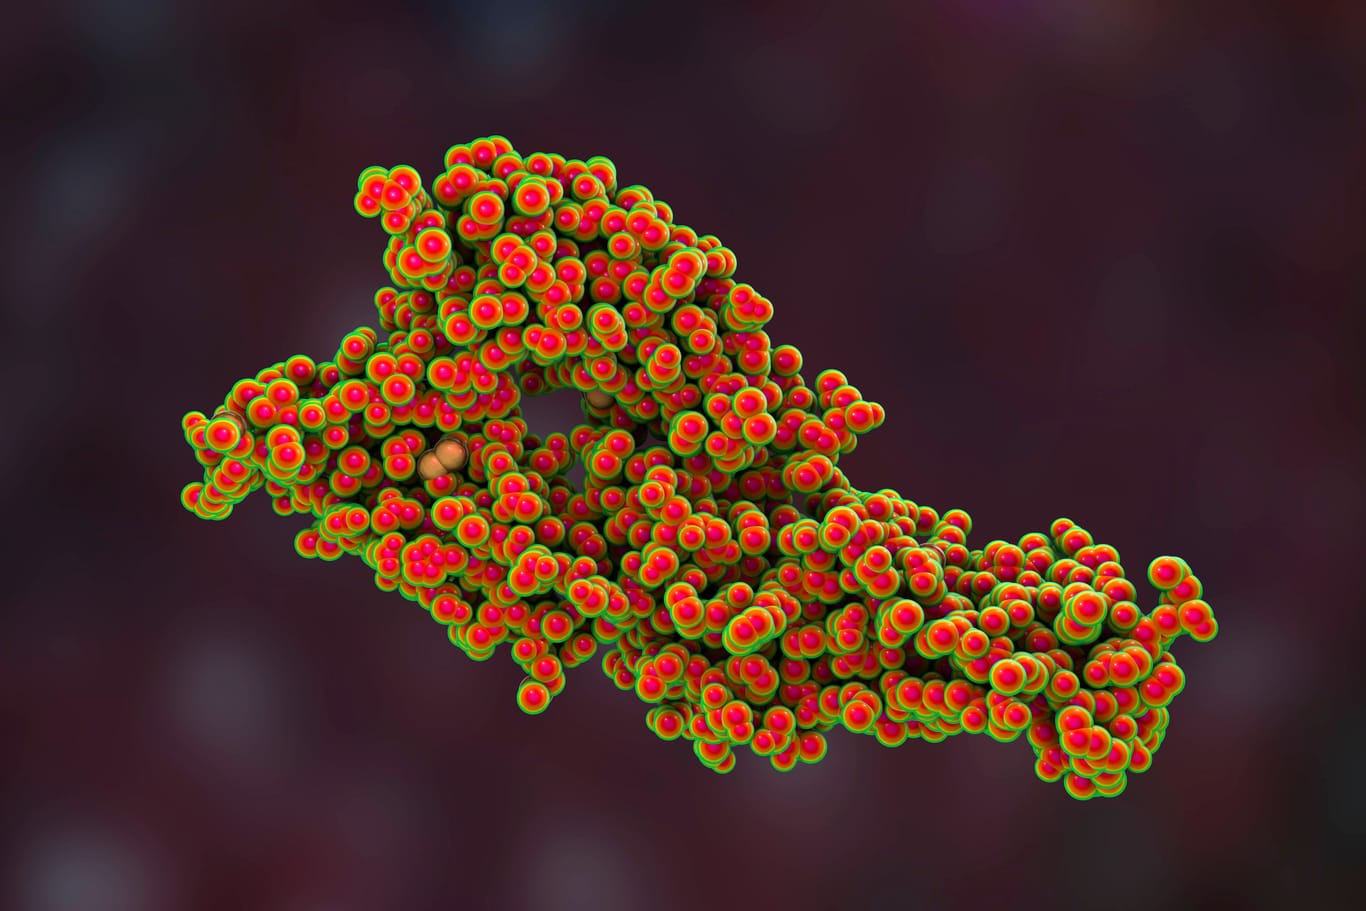 Animation der Molekularstruktur des Hantavirus: Zuletzt war der Landkreis 2019 von einem starken Ausbruch betroffen.